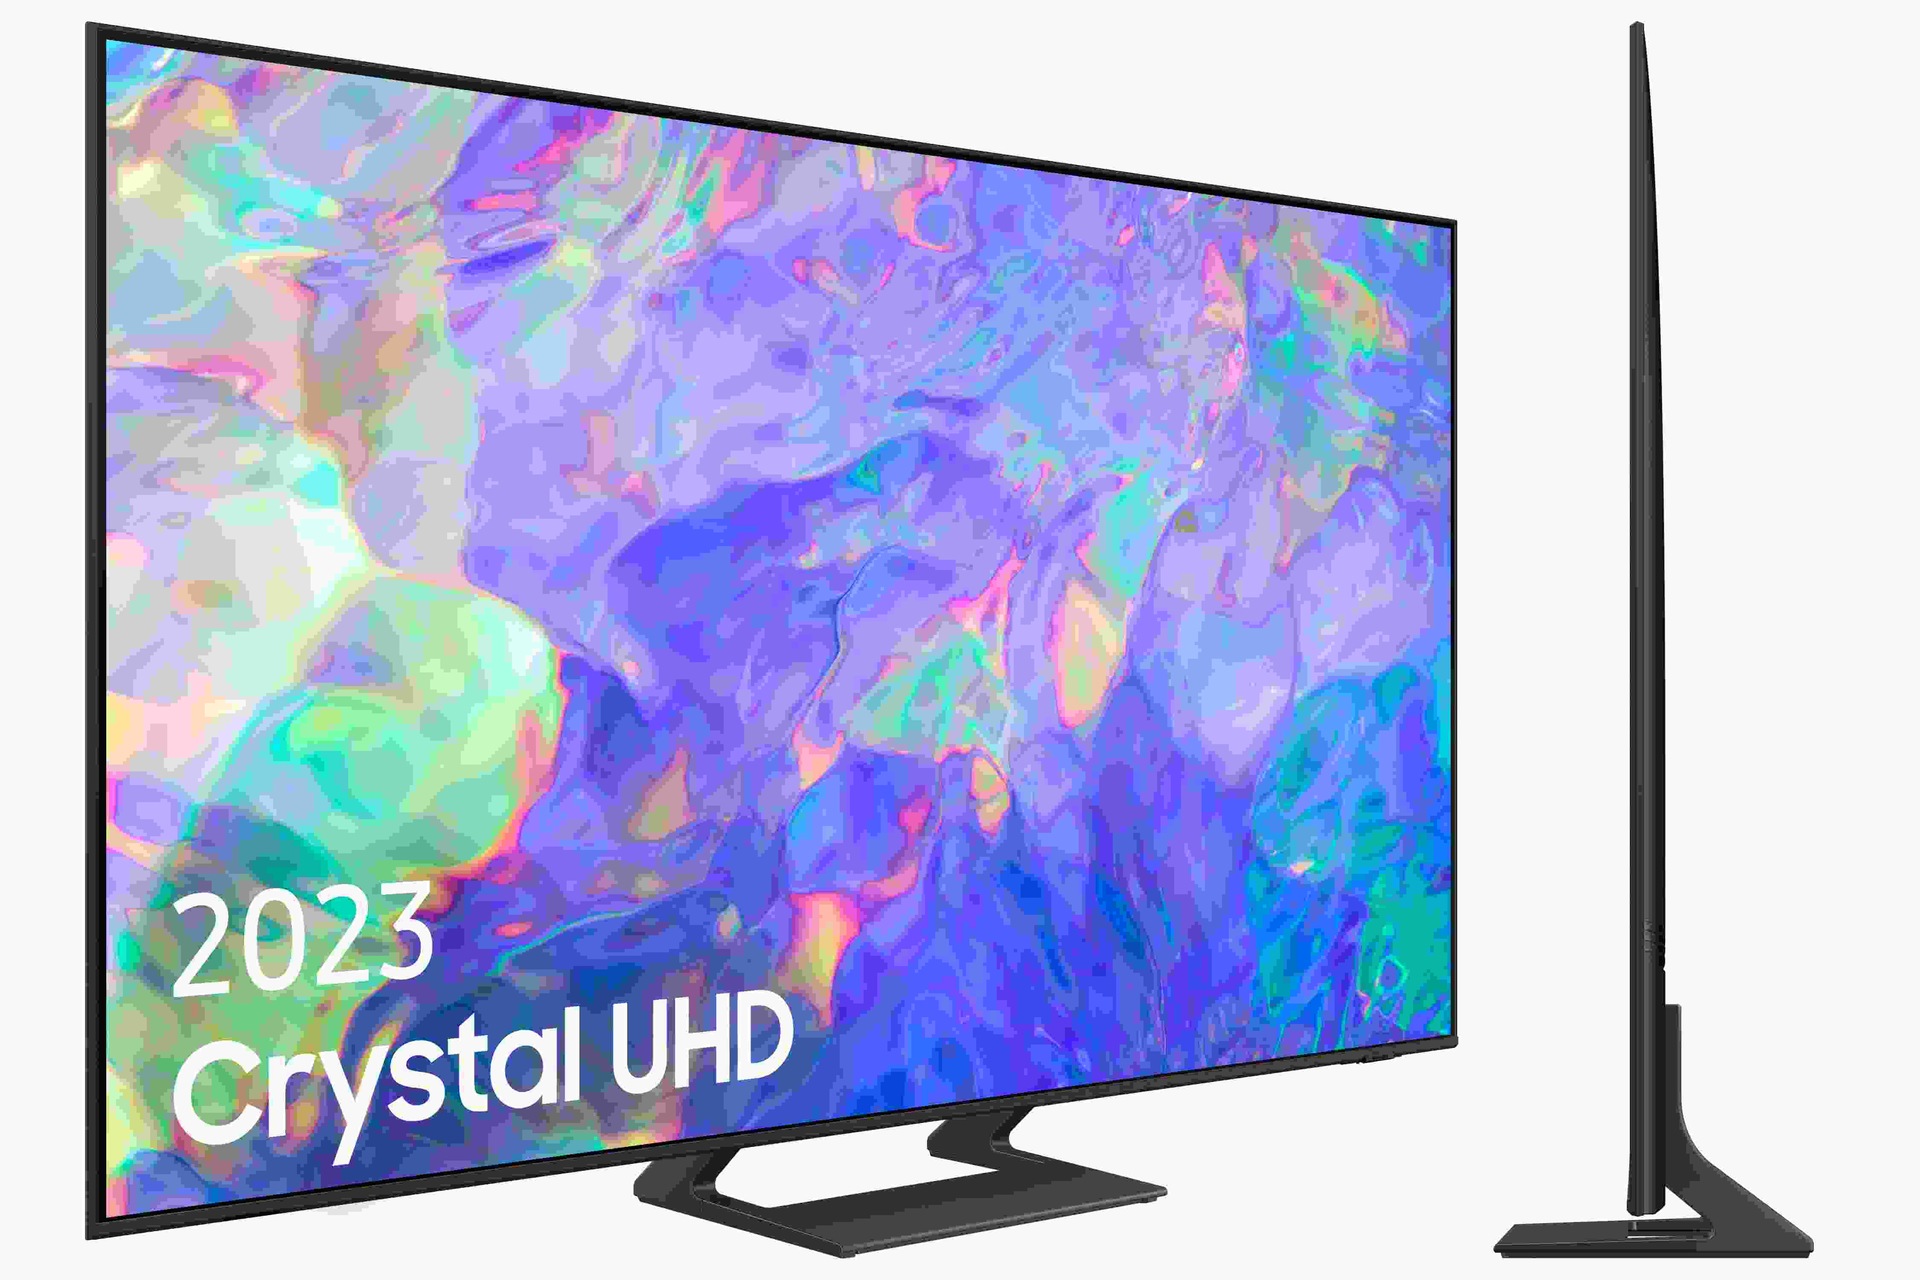 Samsung TV CU8500 Crystal UHD 163cm 65" Smart TV 2023